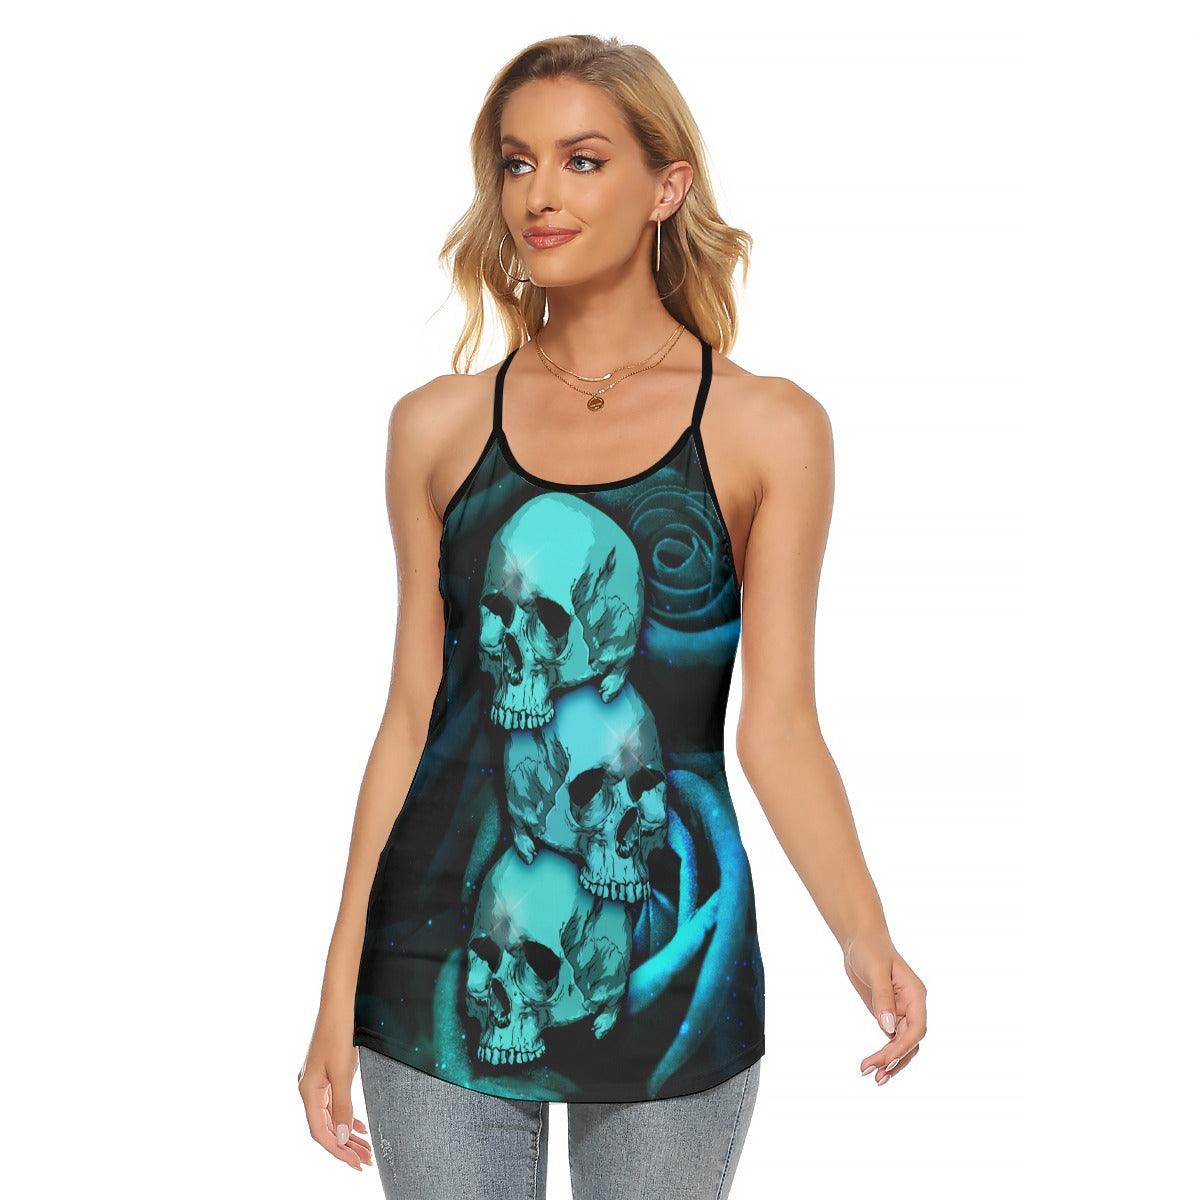 Triple Blue Skull Roses Criss-Cross Open Back Tank Top, Trending T-Shirt For Women - Wonder Skull